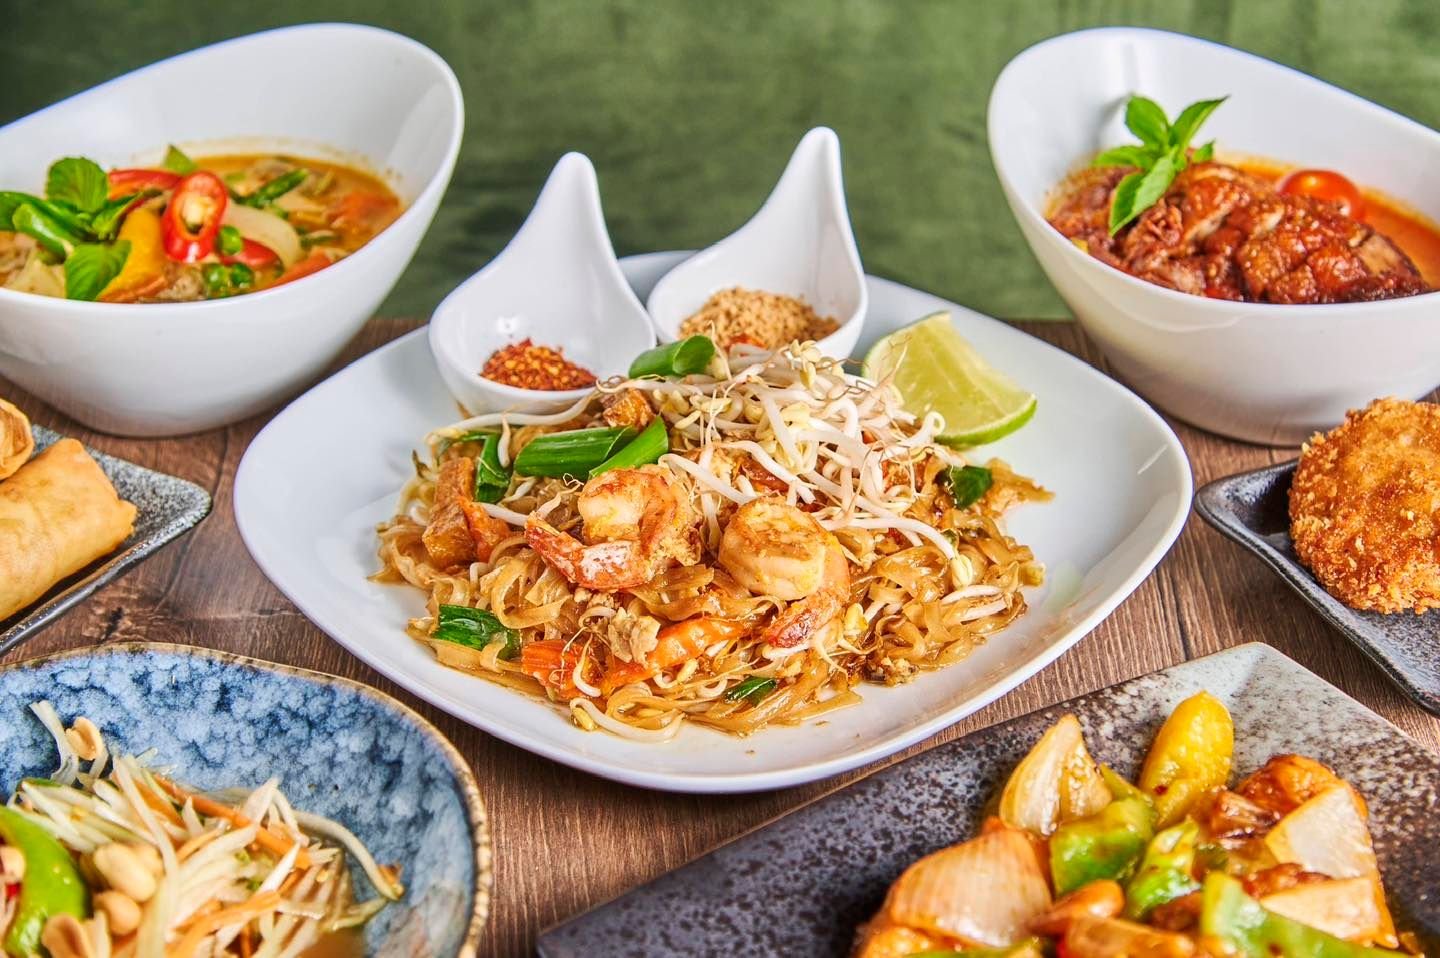 Utvalg av v&aring;re thai retter. Kinn=spise. 
Kinnara=kom og spis ( fritt oversatt ). #ThaiRestaurant #Thailand #thaifood #storo